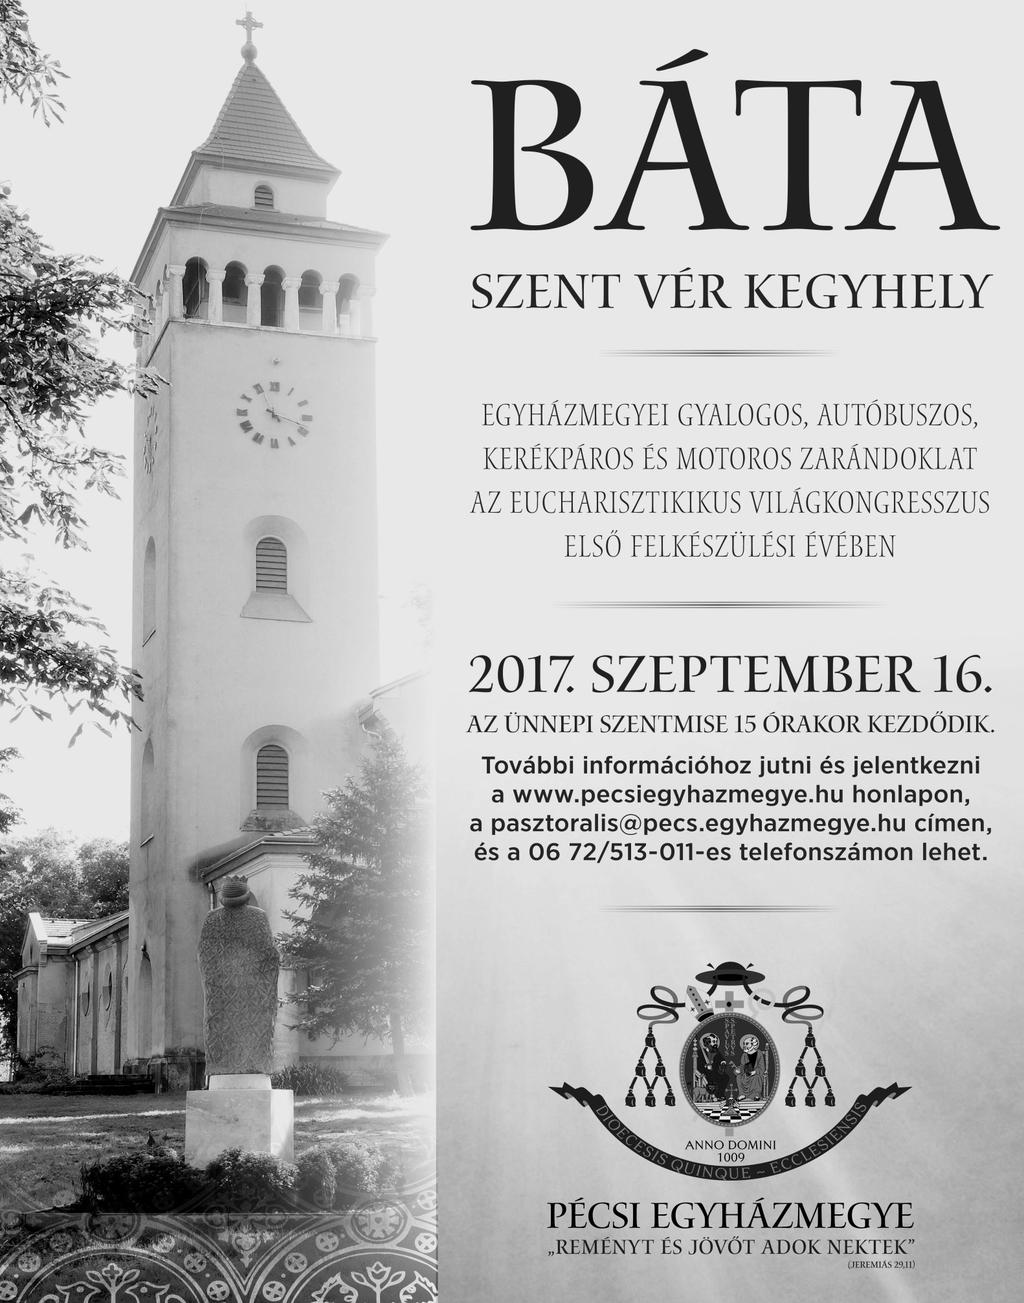 Tájékoztatjuk a Tisztelt Lakosságot, hogy a képviselőtestületi ülések meghívói, előterjesztései és az ülésről készített jegyzőkönyvek a www.bata.